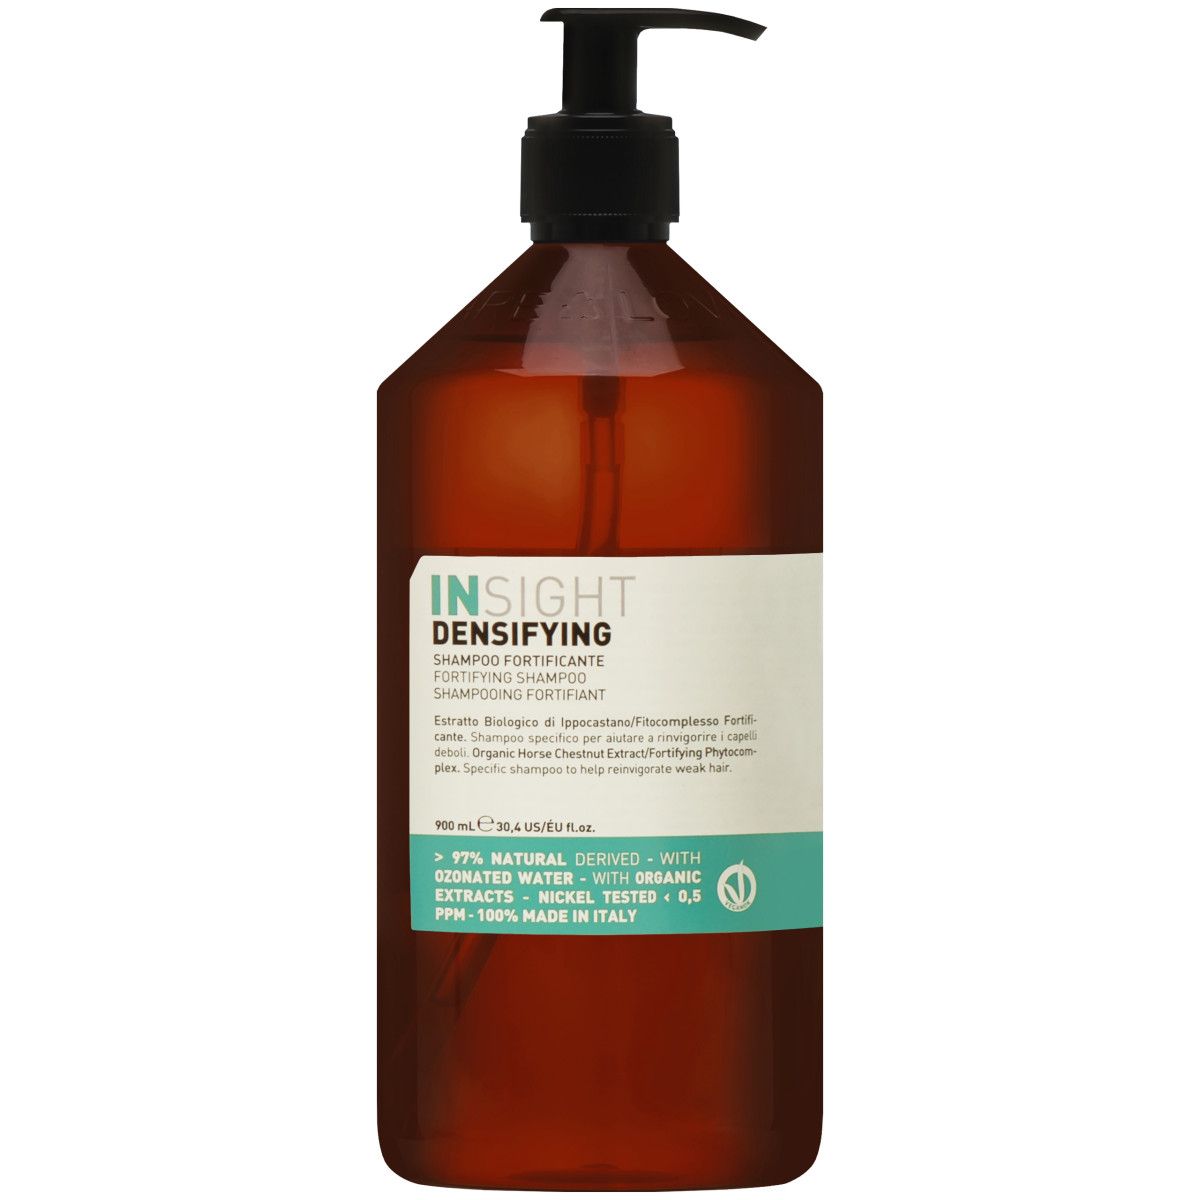 Insight Densifying Fortifying Shampoo - szampon przeciw wypadaniu włosów, 900ml